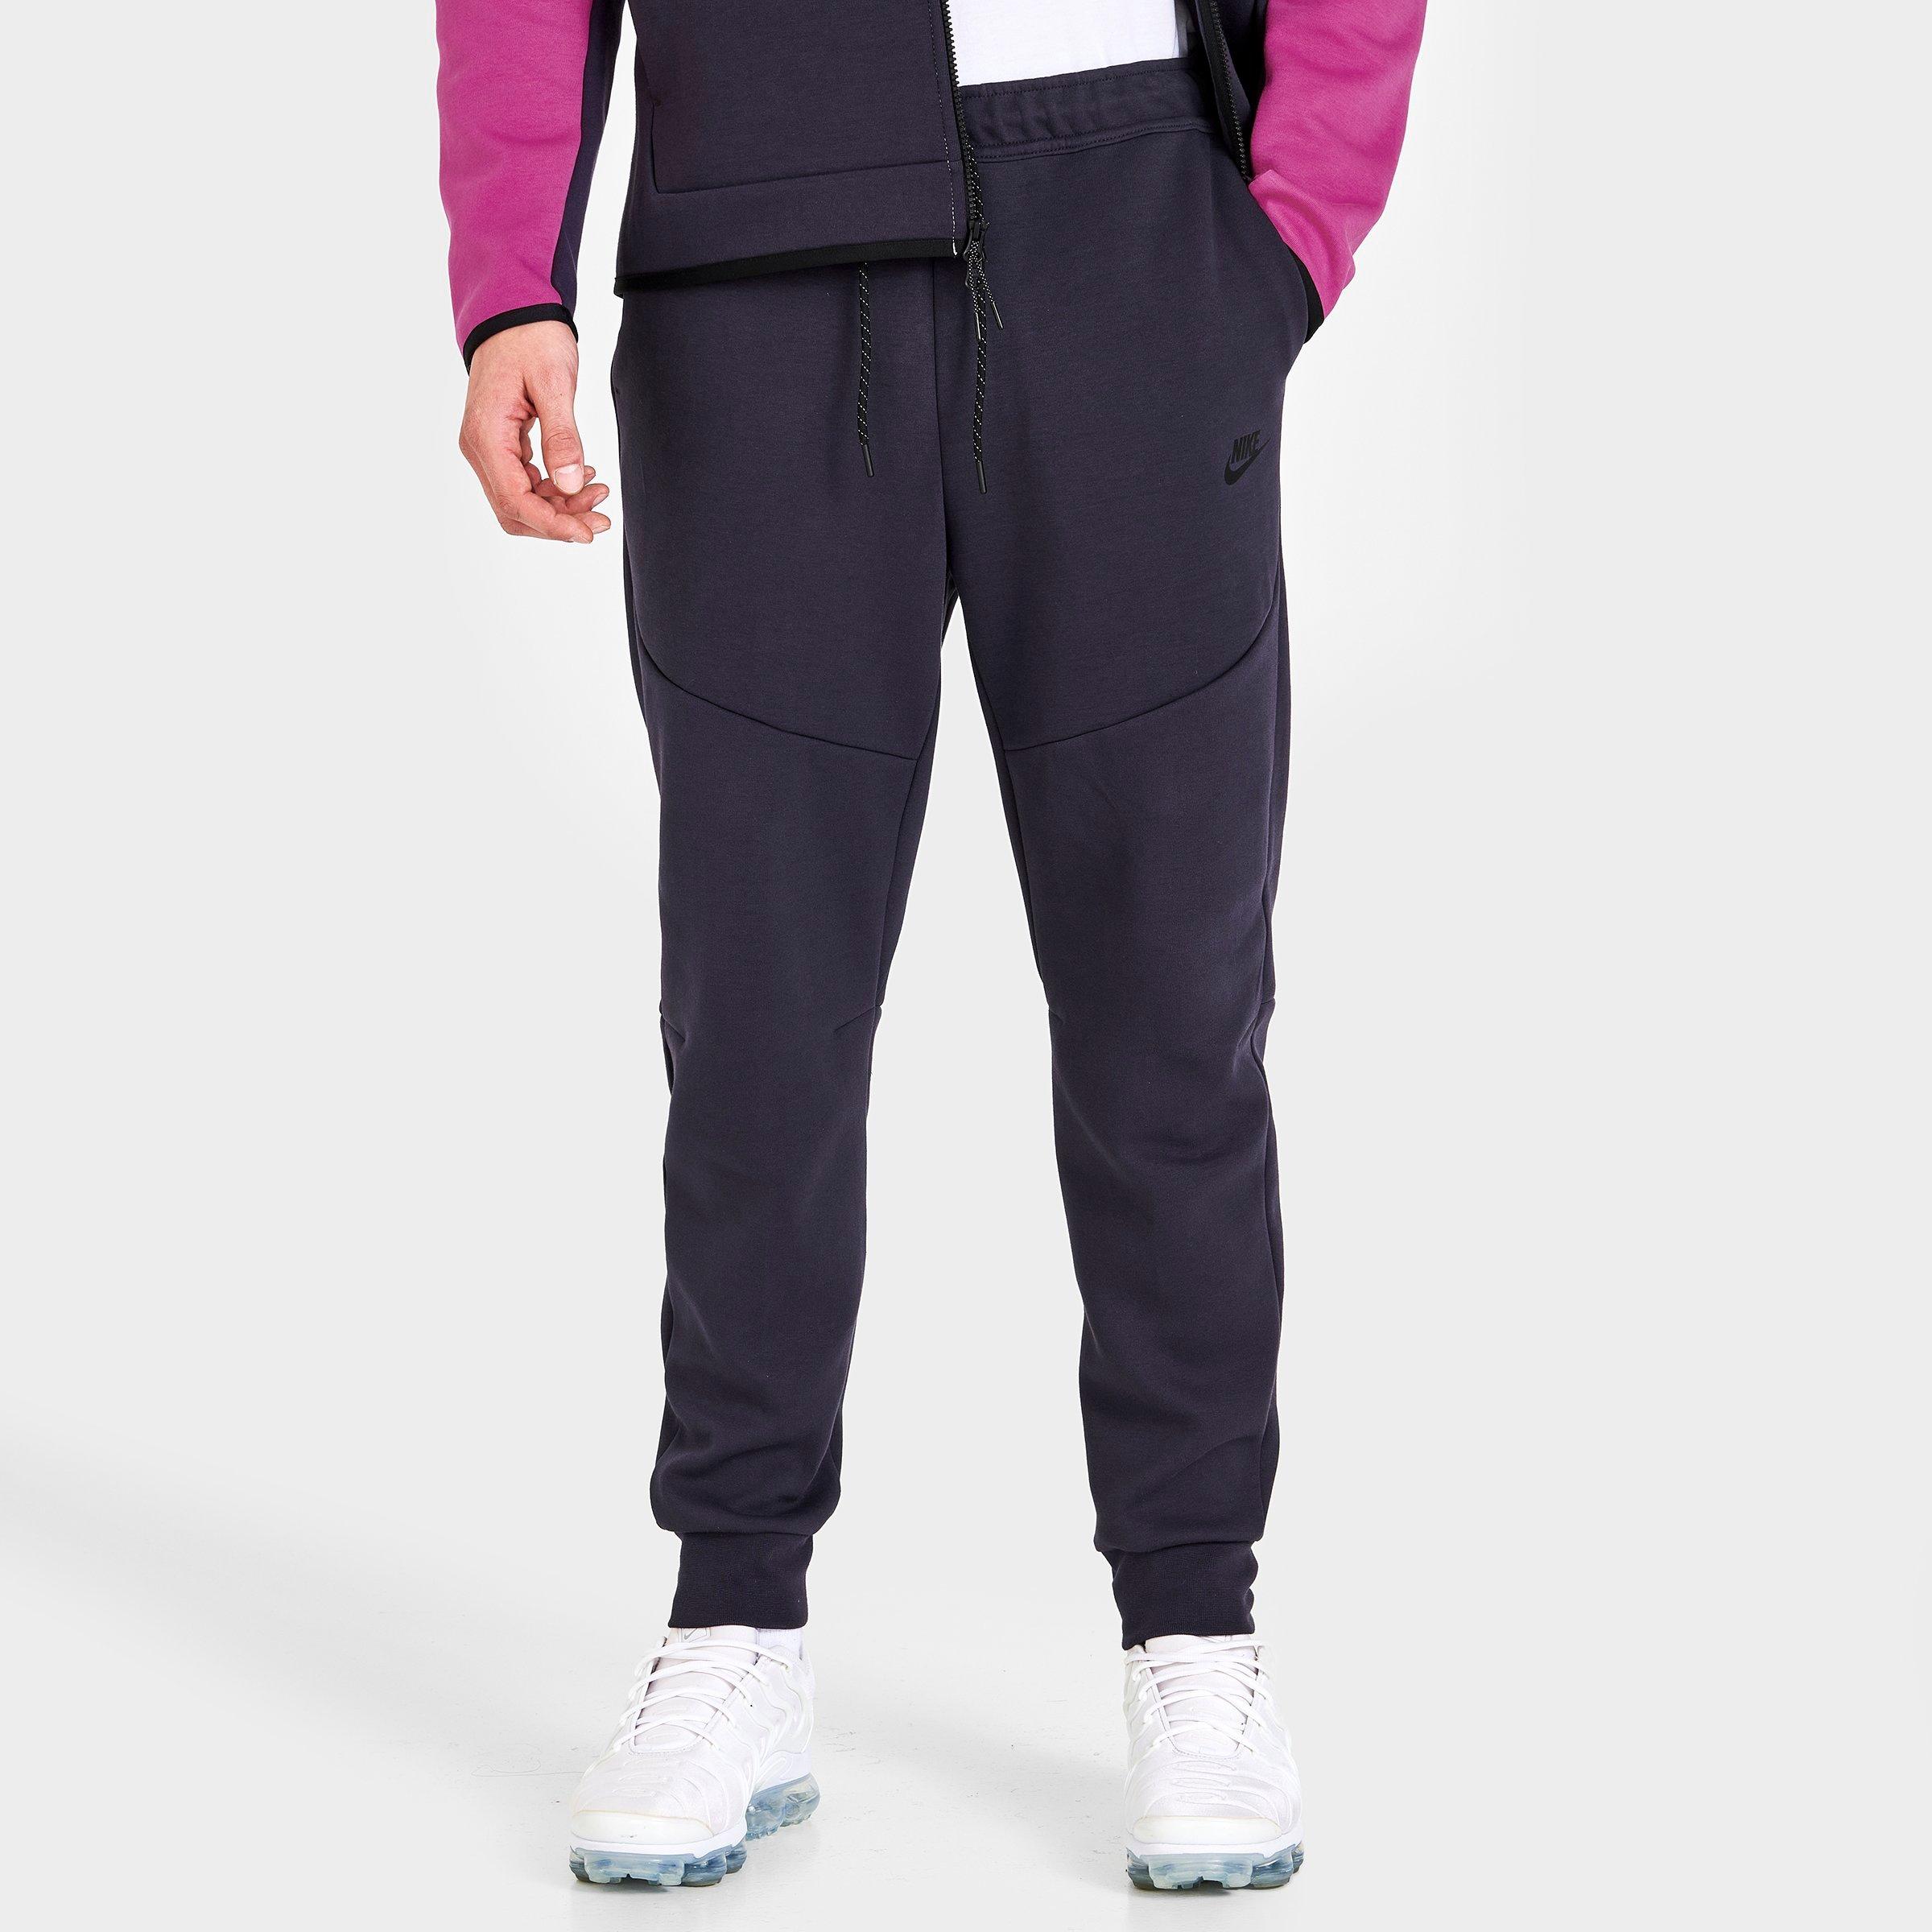 Nike Men's Tech Fleece Pant Grey CU4495 063 - Sam Tabak